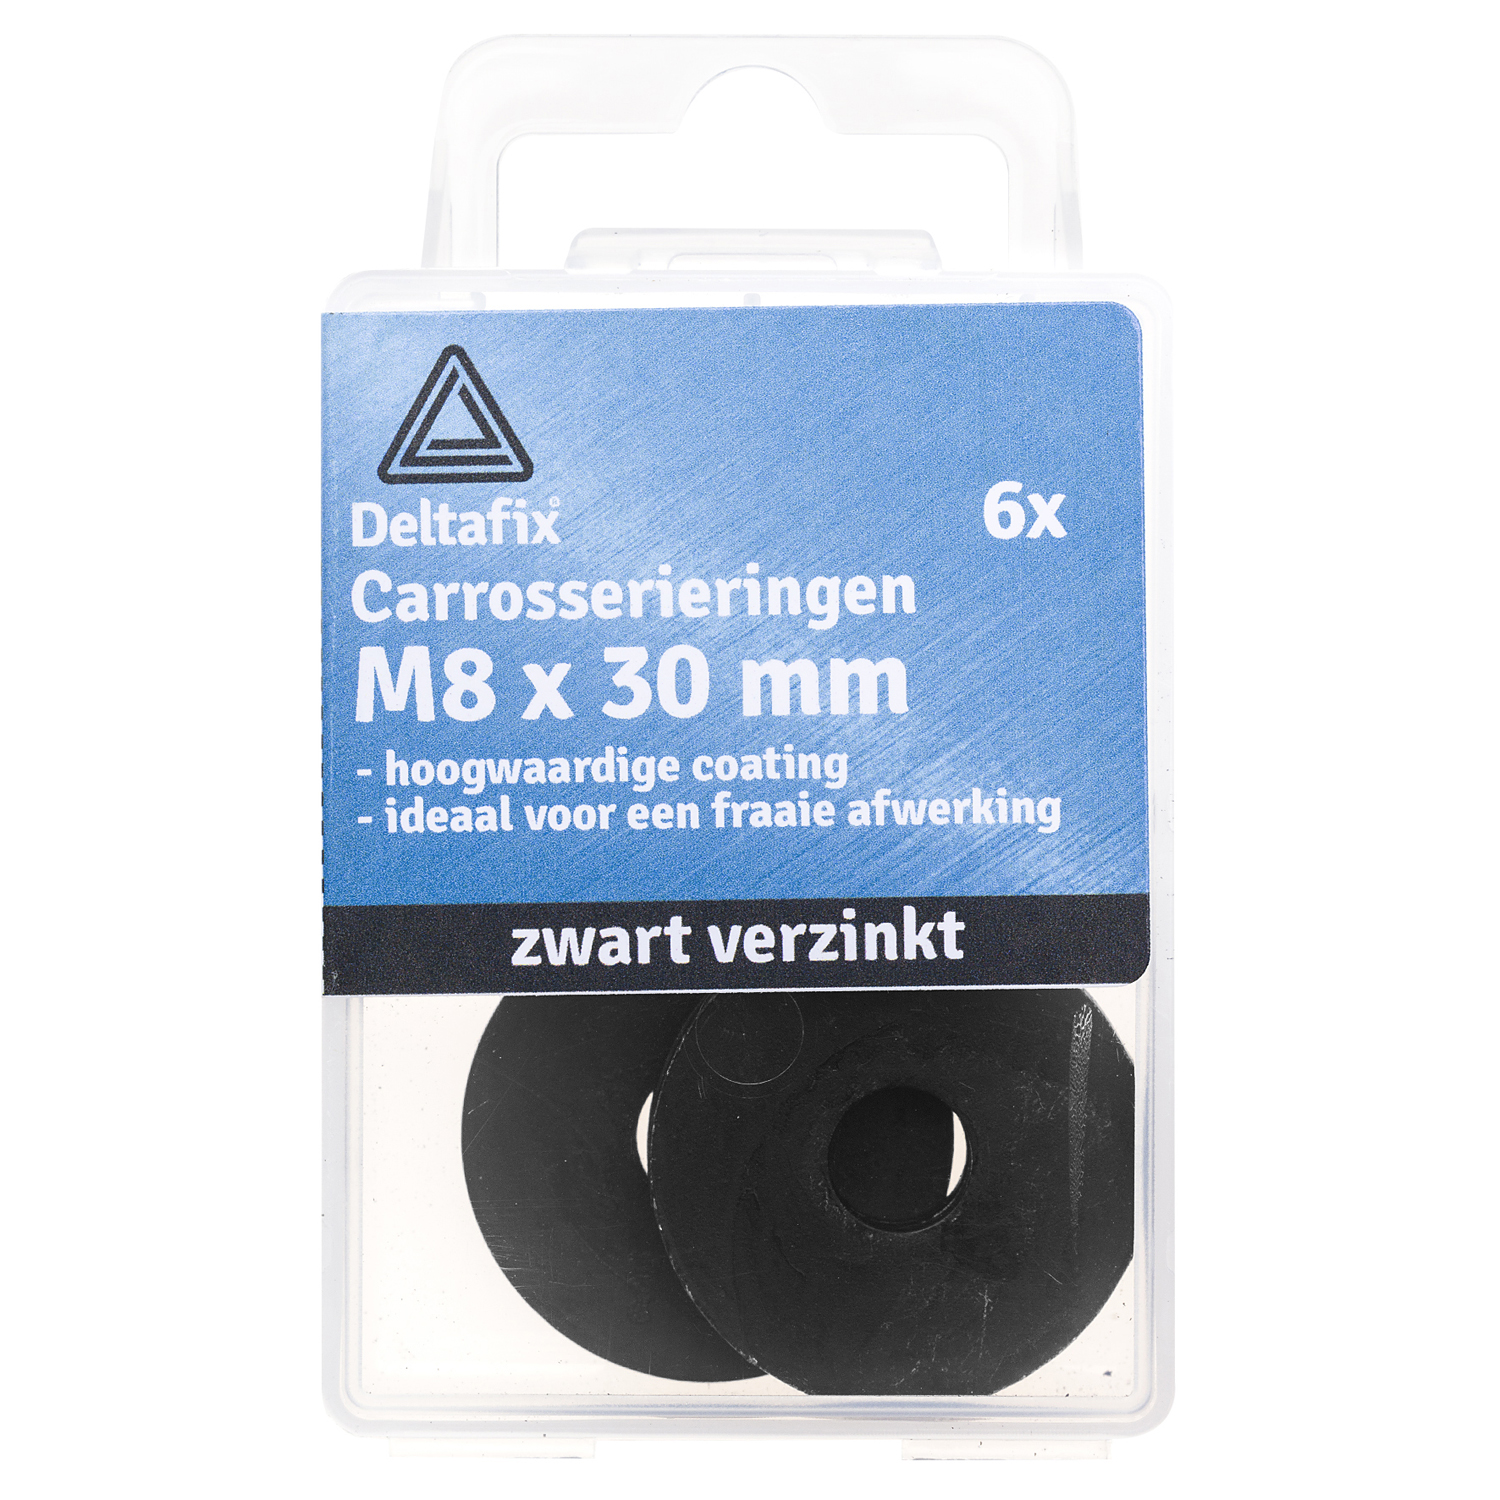 Afbeelding Deltafix Carrosserieringen M8 x 30 x 1,5 Zwart VZ 6 Stuks door Haxo.nl